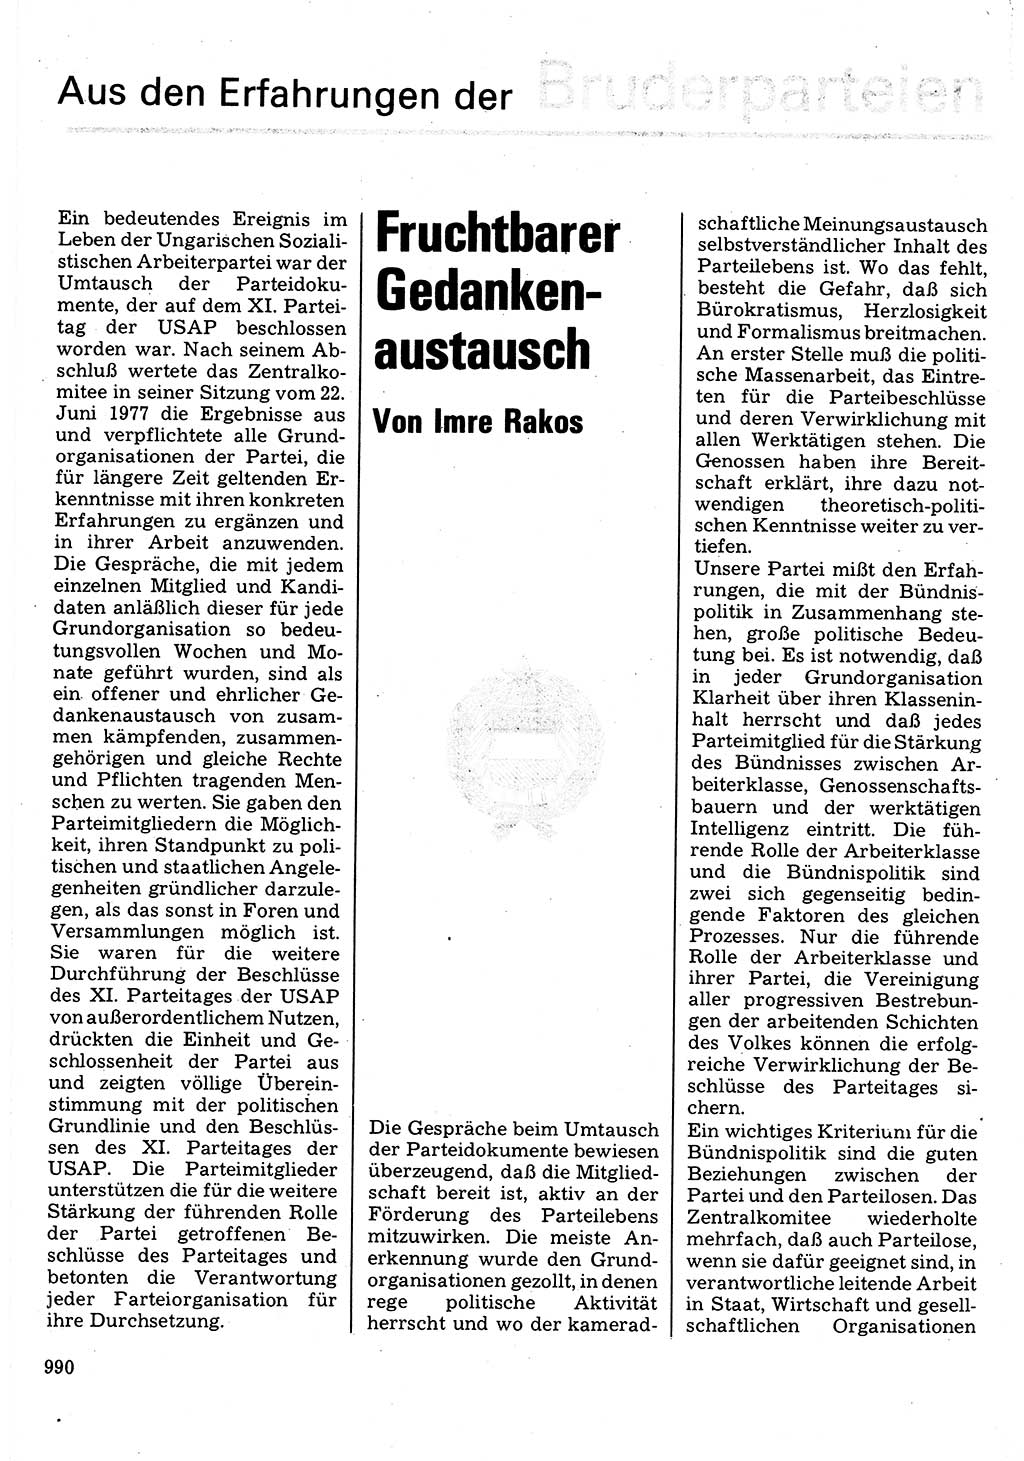 Neuer Weg (NW), Organ des Zentralkomitees (ZK) der SED (Sozialistische Einheitspartei Deutschlands) für Fragen des Parteilebens, 32. Jahrgang [Deutsche Demokratische Republik (DDR)] 1977, Seite 990 (NW ZK SED DDR 1977, S. 990)